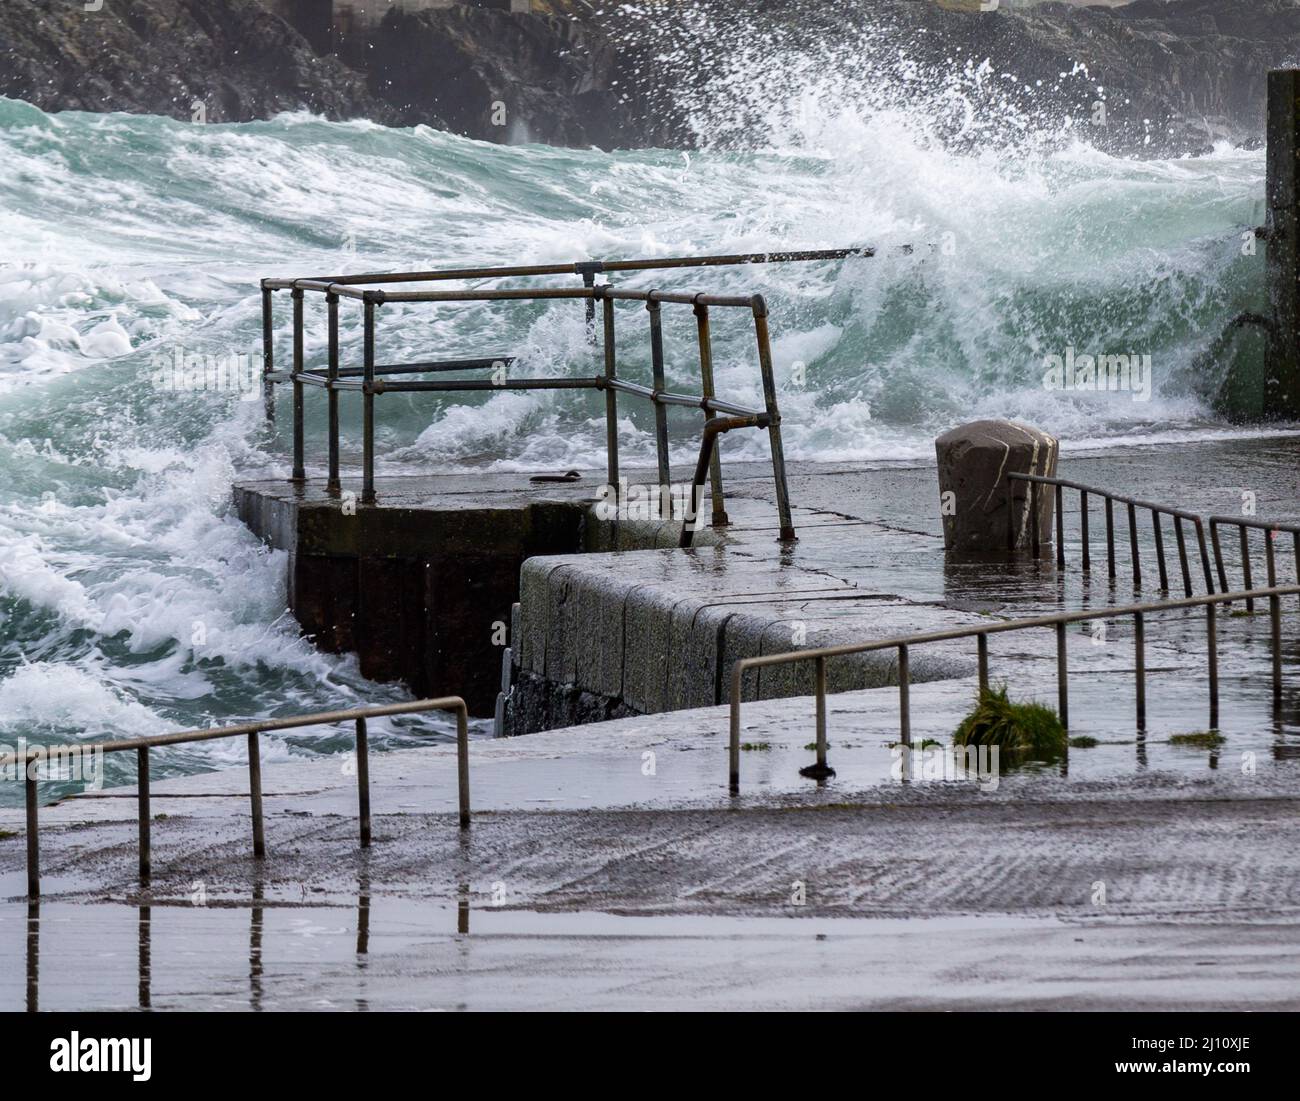 Des ondes de tempête de l'Atlantique se brisent au-dessus des barrières de sécurité des quais Banque D'Images